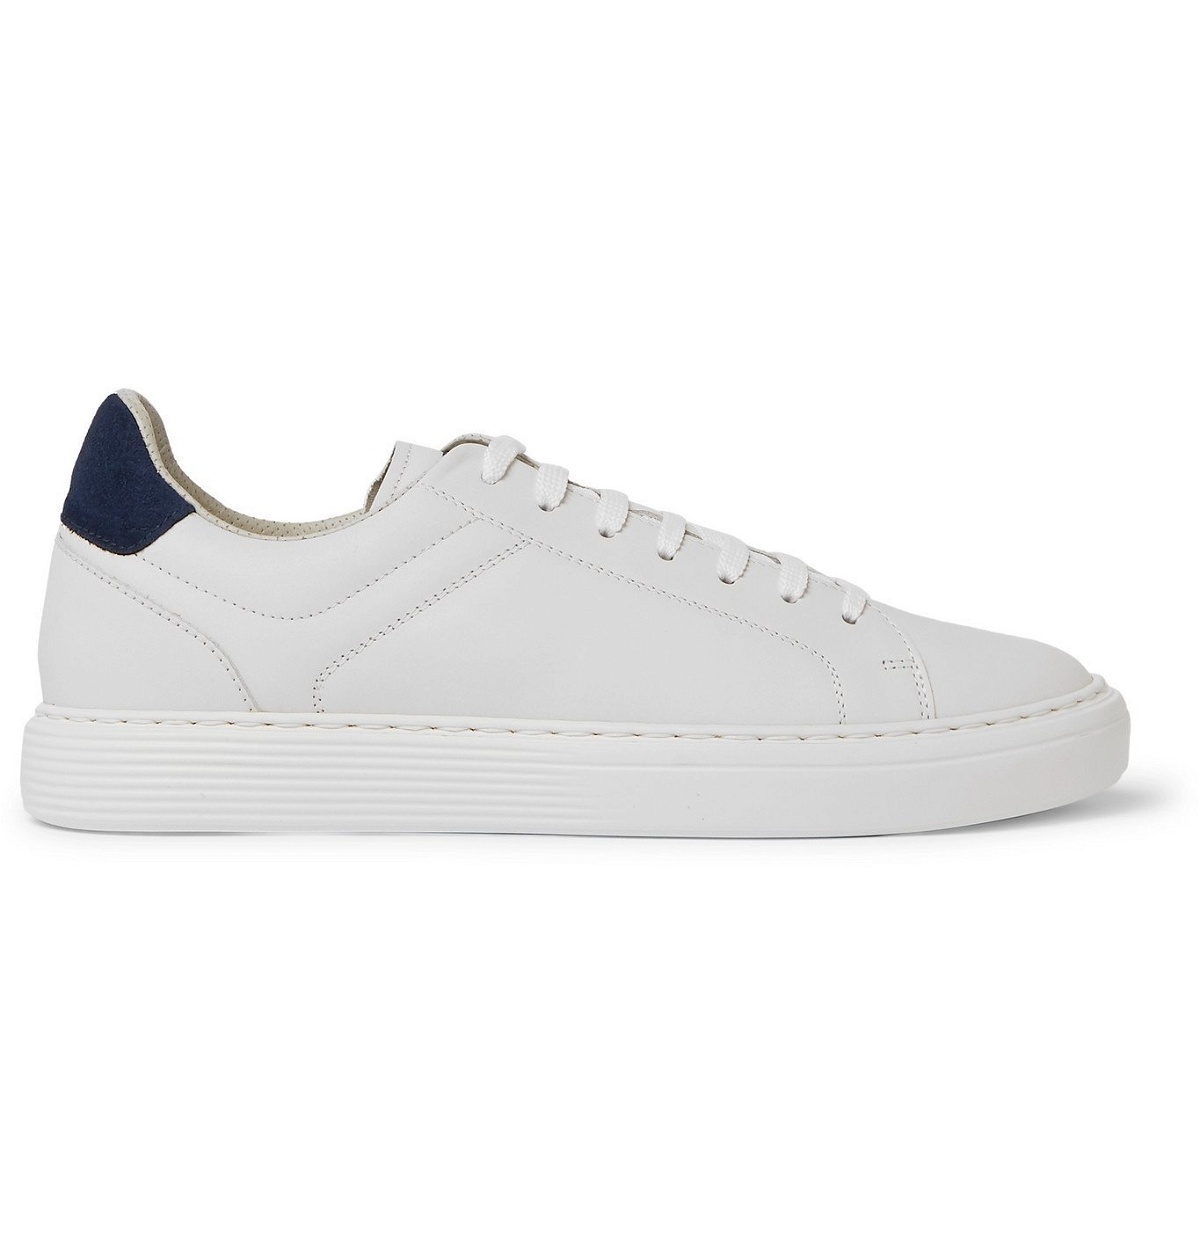 Brunello Cucinelli - Suede-Trimmed Leather Sneakers - White Brunello ...